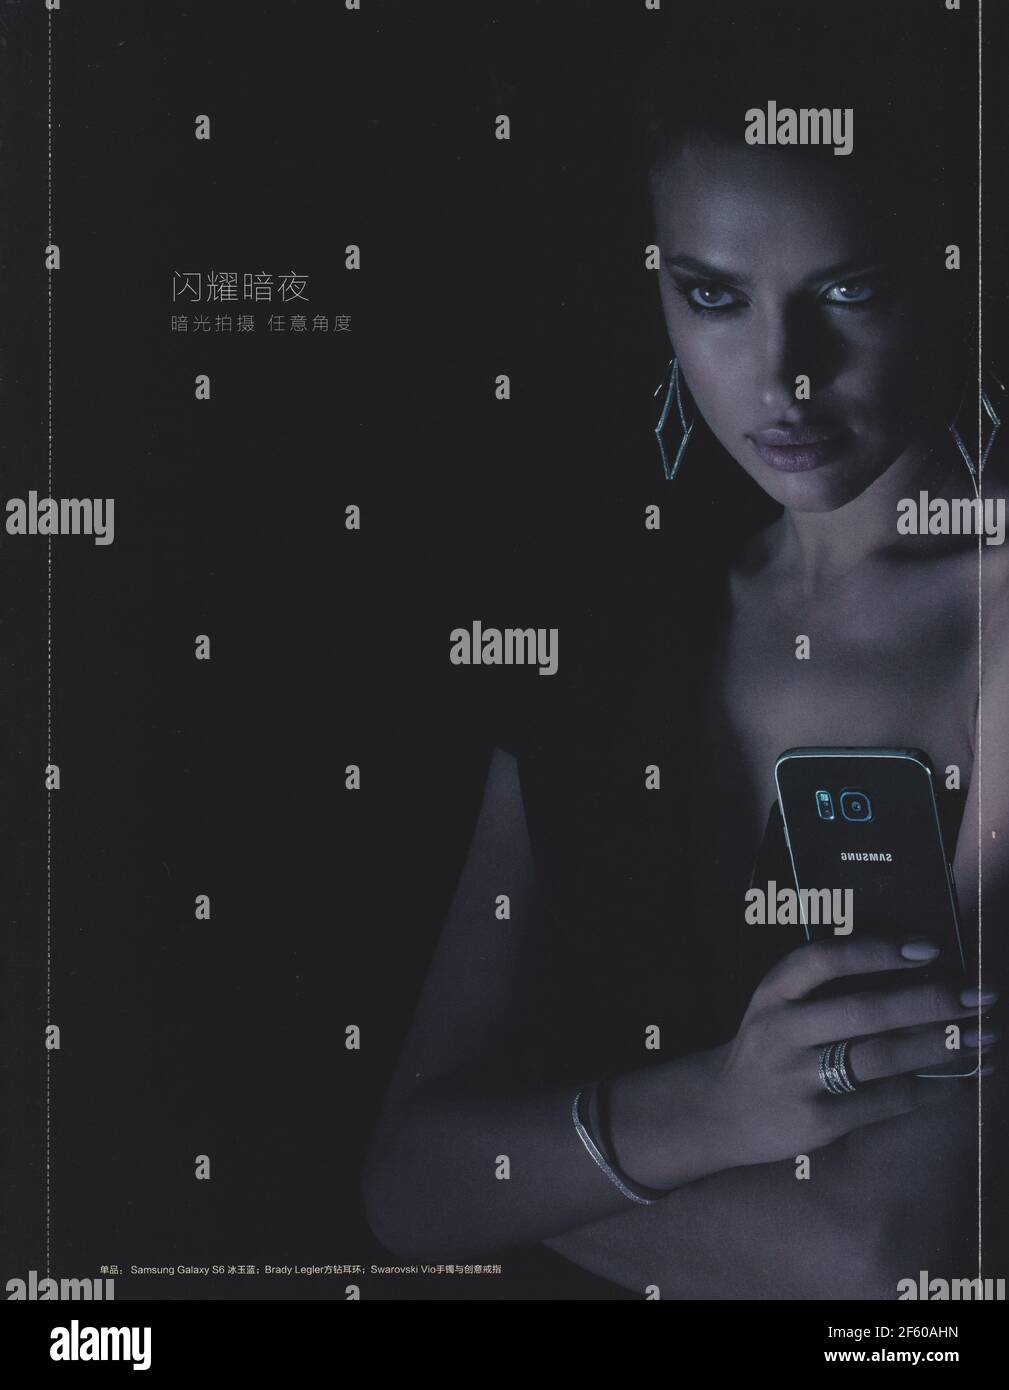 Plakat Werbung SAMSUNG S6 Smartphone mit Irina Shayk in Papier-Magazin von 2015 kreative SAMSUNG Anzeige Stockfotografie - Alamy